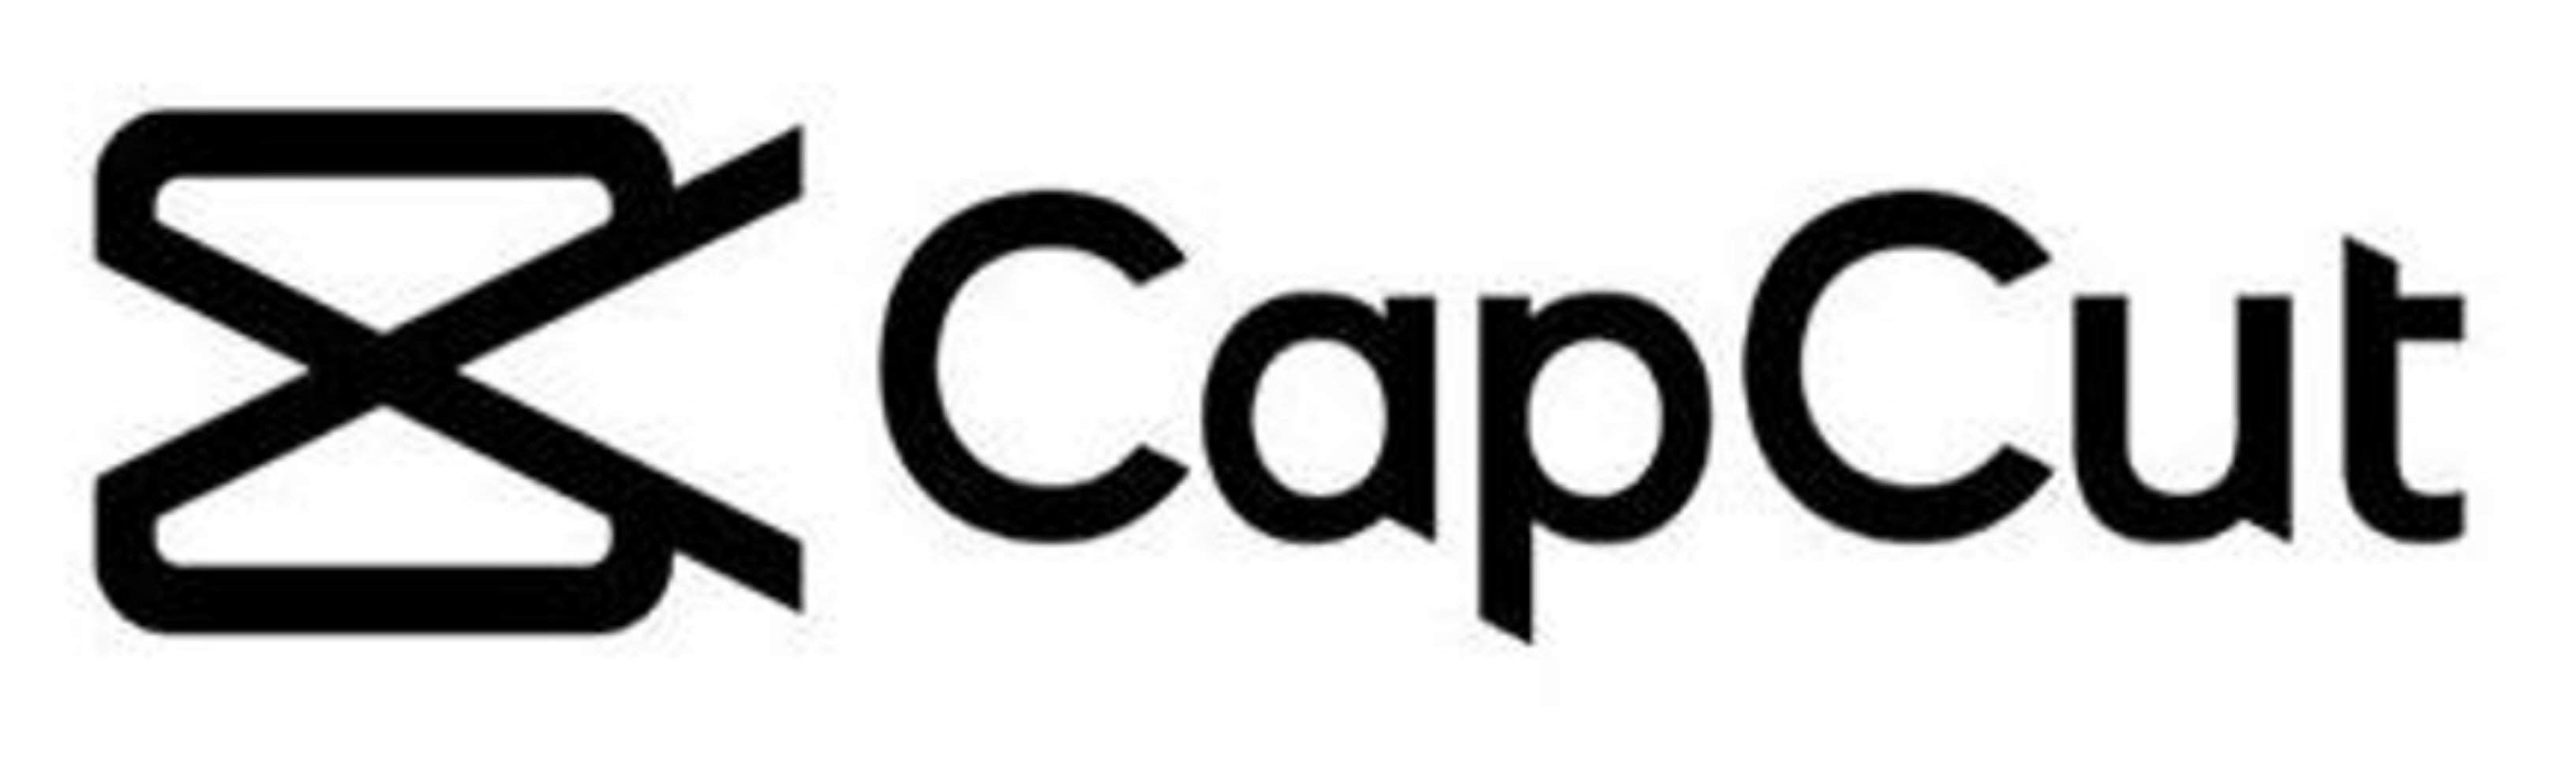 Capcut все открыто. CAPCUT logo. CAPCUT лого. Значок CAPCUT на прозрачном фоне. CAPCUT без фона.